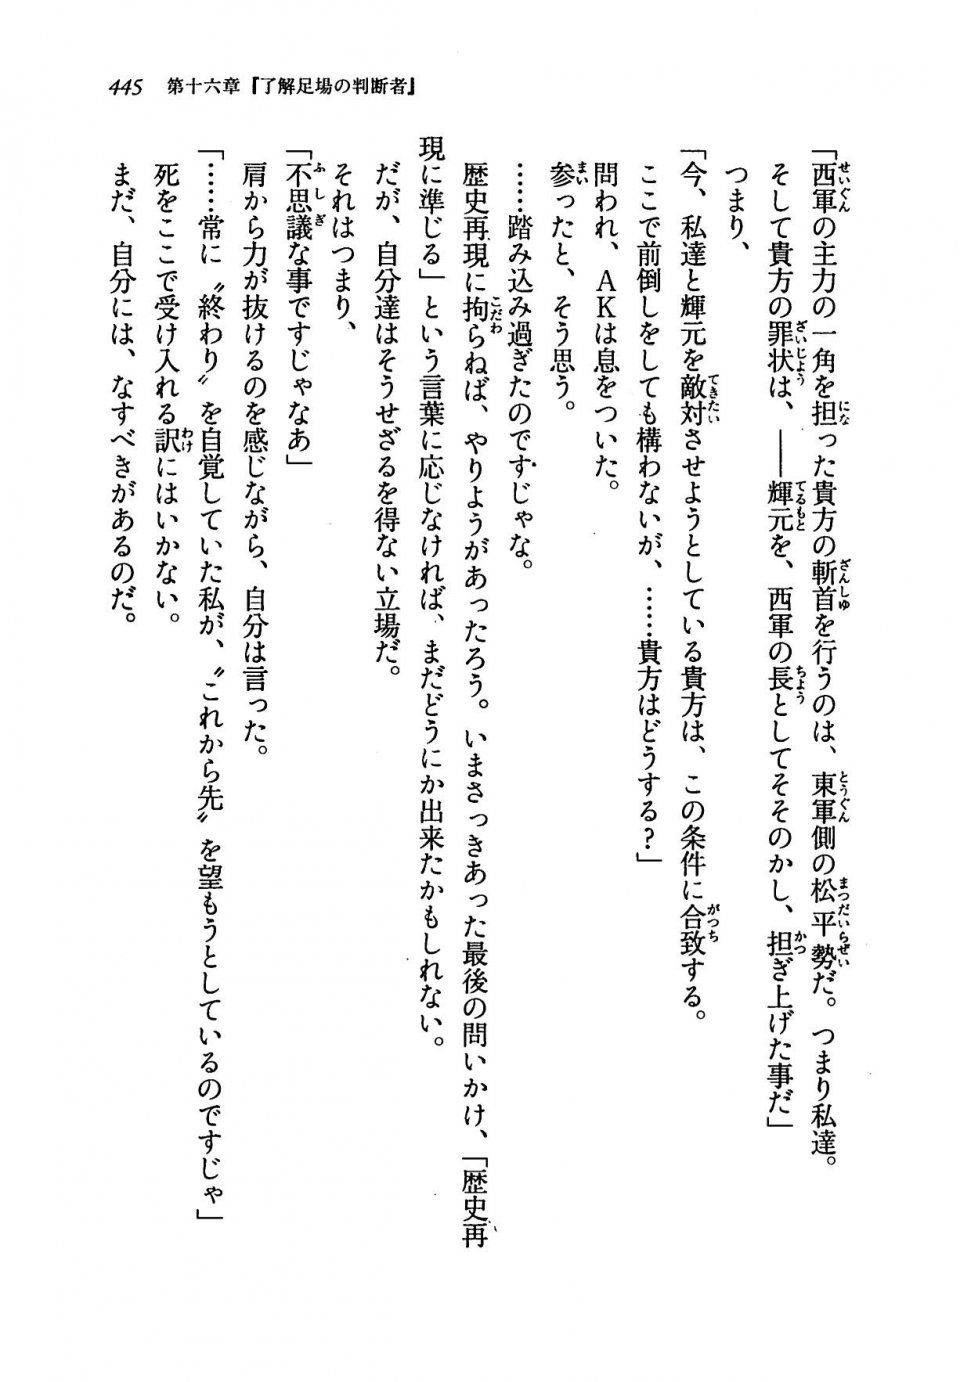 Kyoukai Senjou no Horizon LN Vol 19(8A) - Photo #445